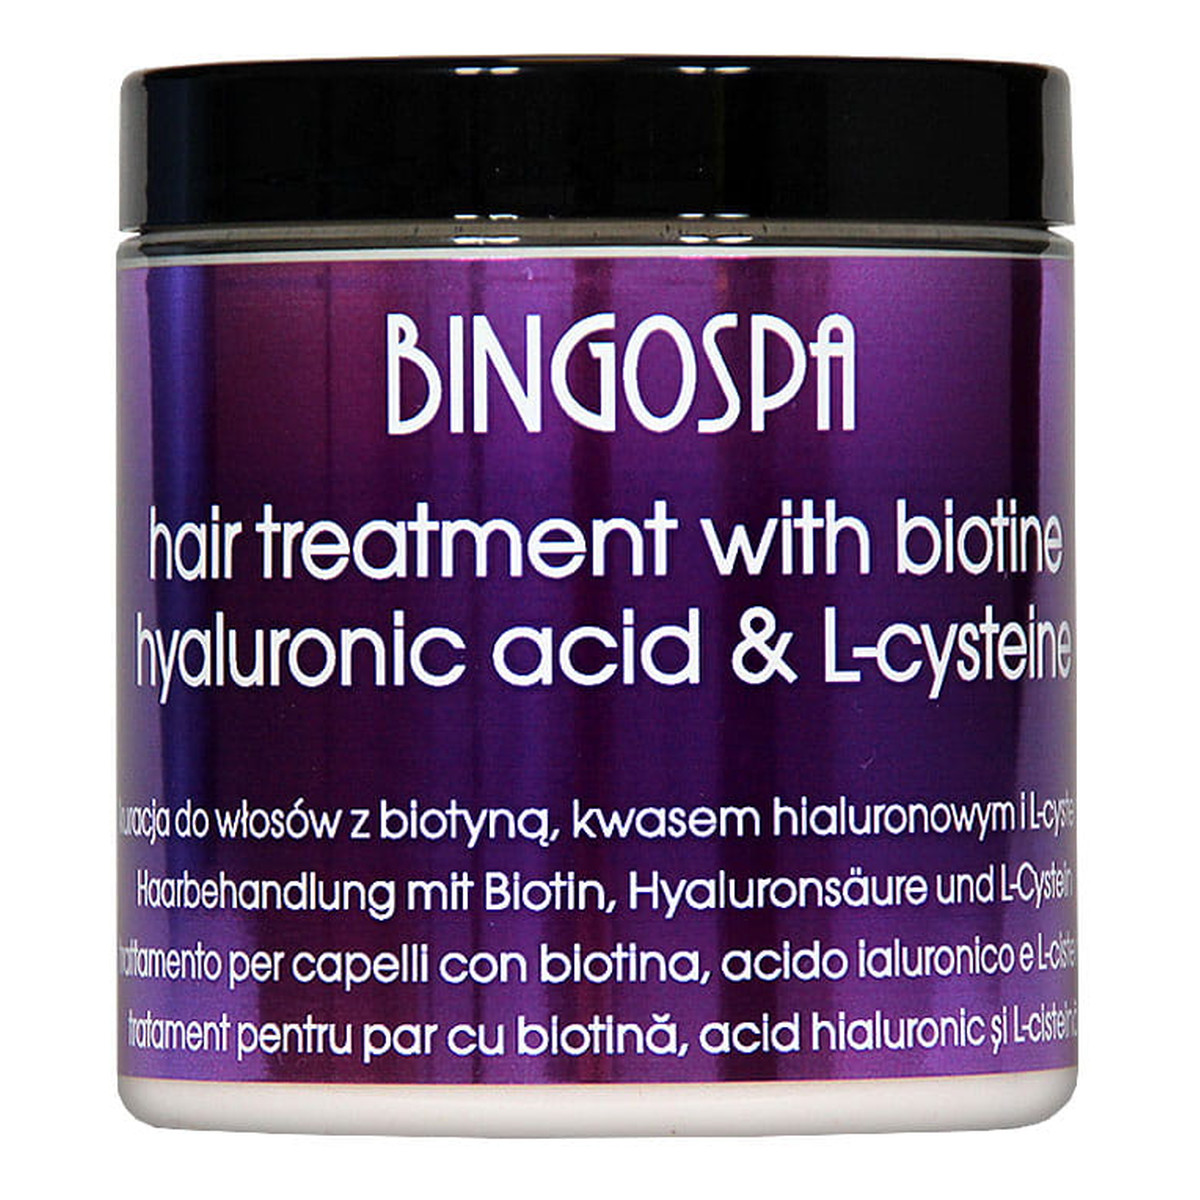 BingoSpa Kuracja do włosów z biotyną, kwasem hialuronowym i L-cysteiną 250g